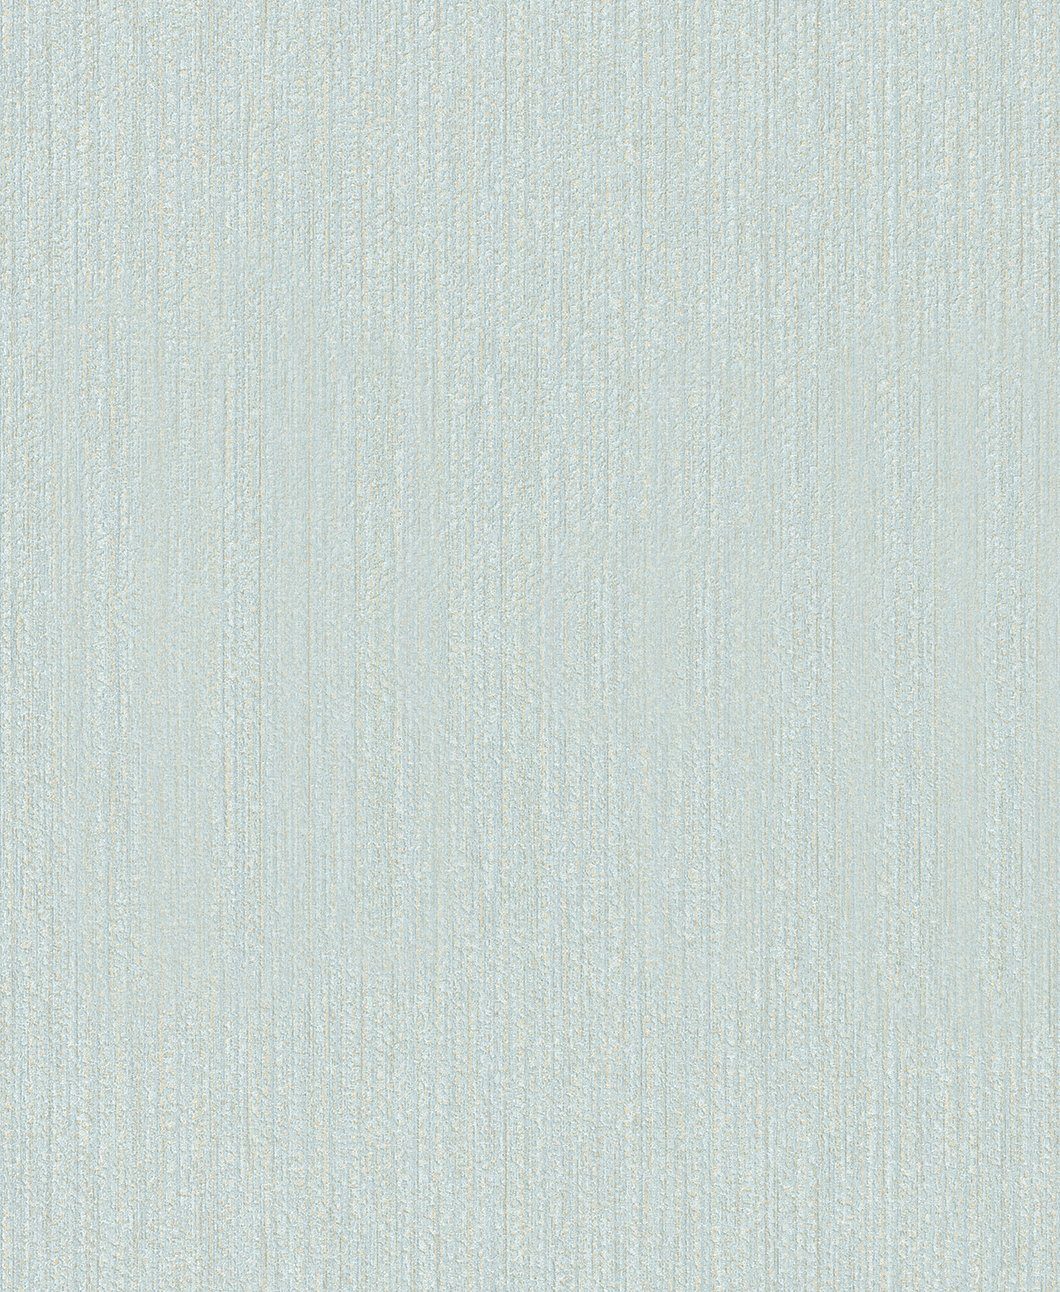 SCHÖNER WOHNEN-Kollektion Vliestapete, realistisch, hellblau 10,05 0,53 x Meter